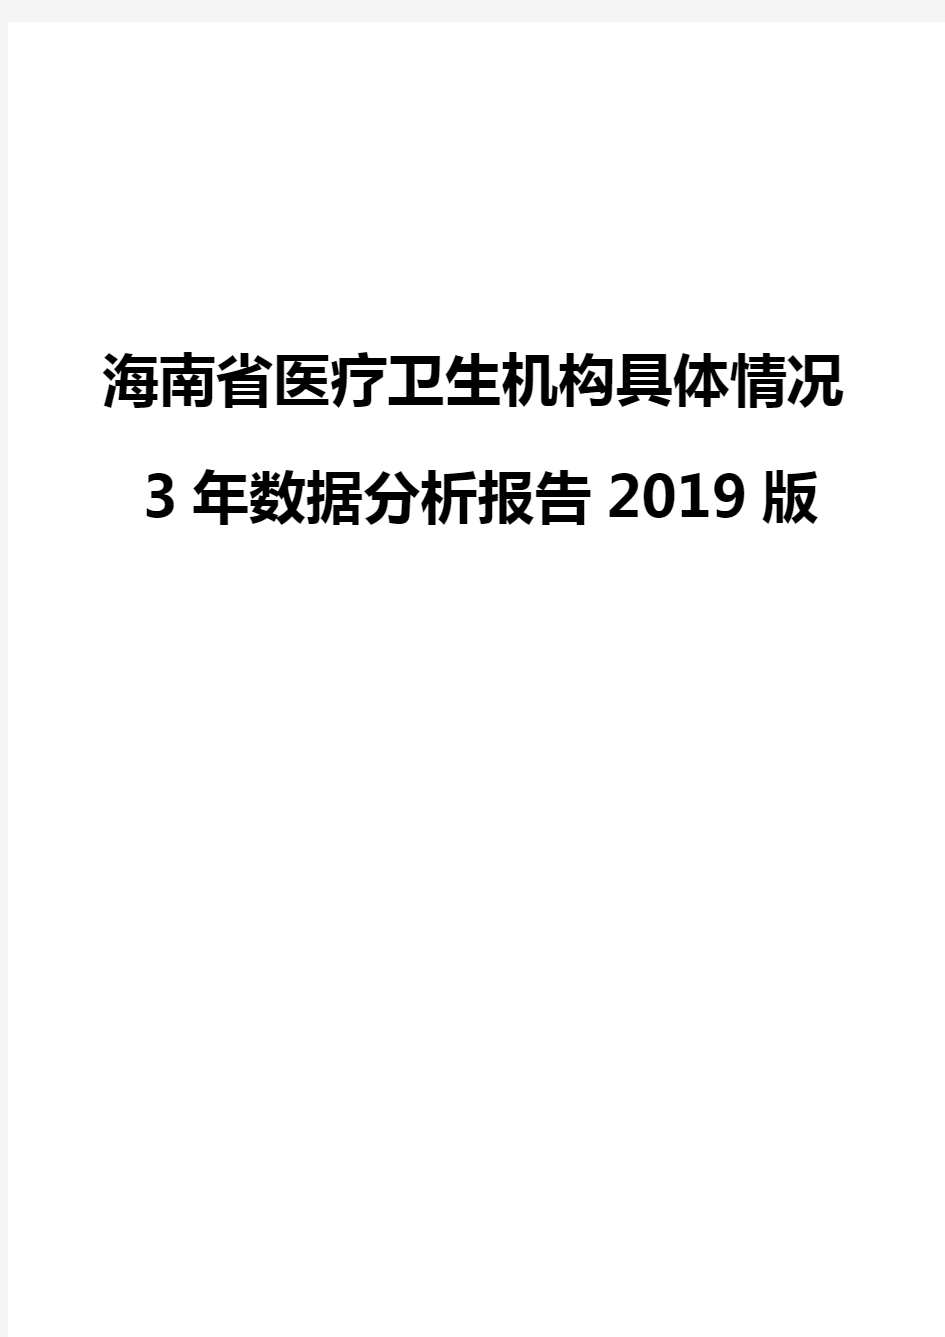 海南省医疗卫生机构具体情况3年数据分析报告2019版